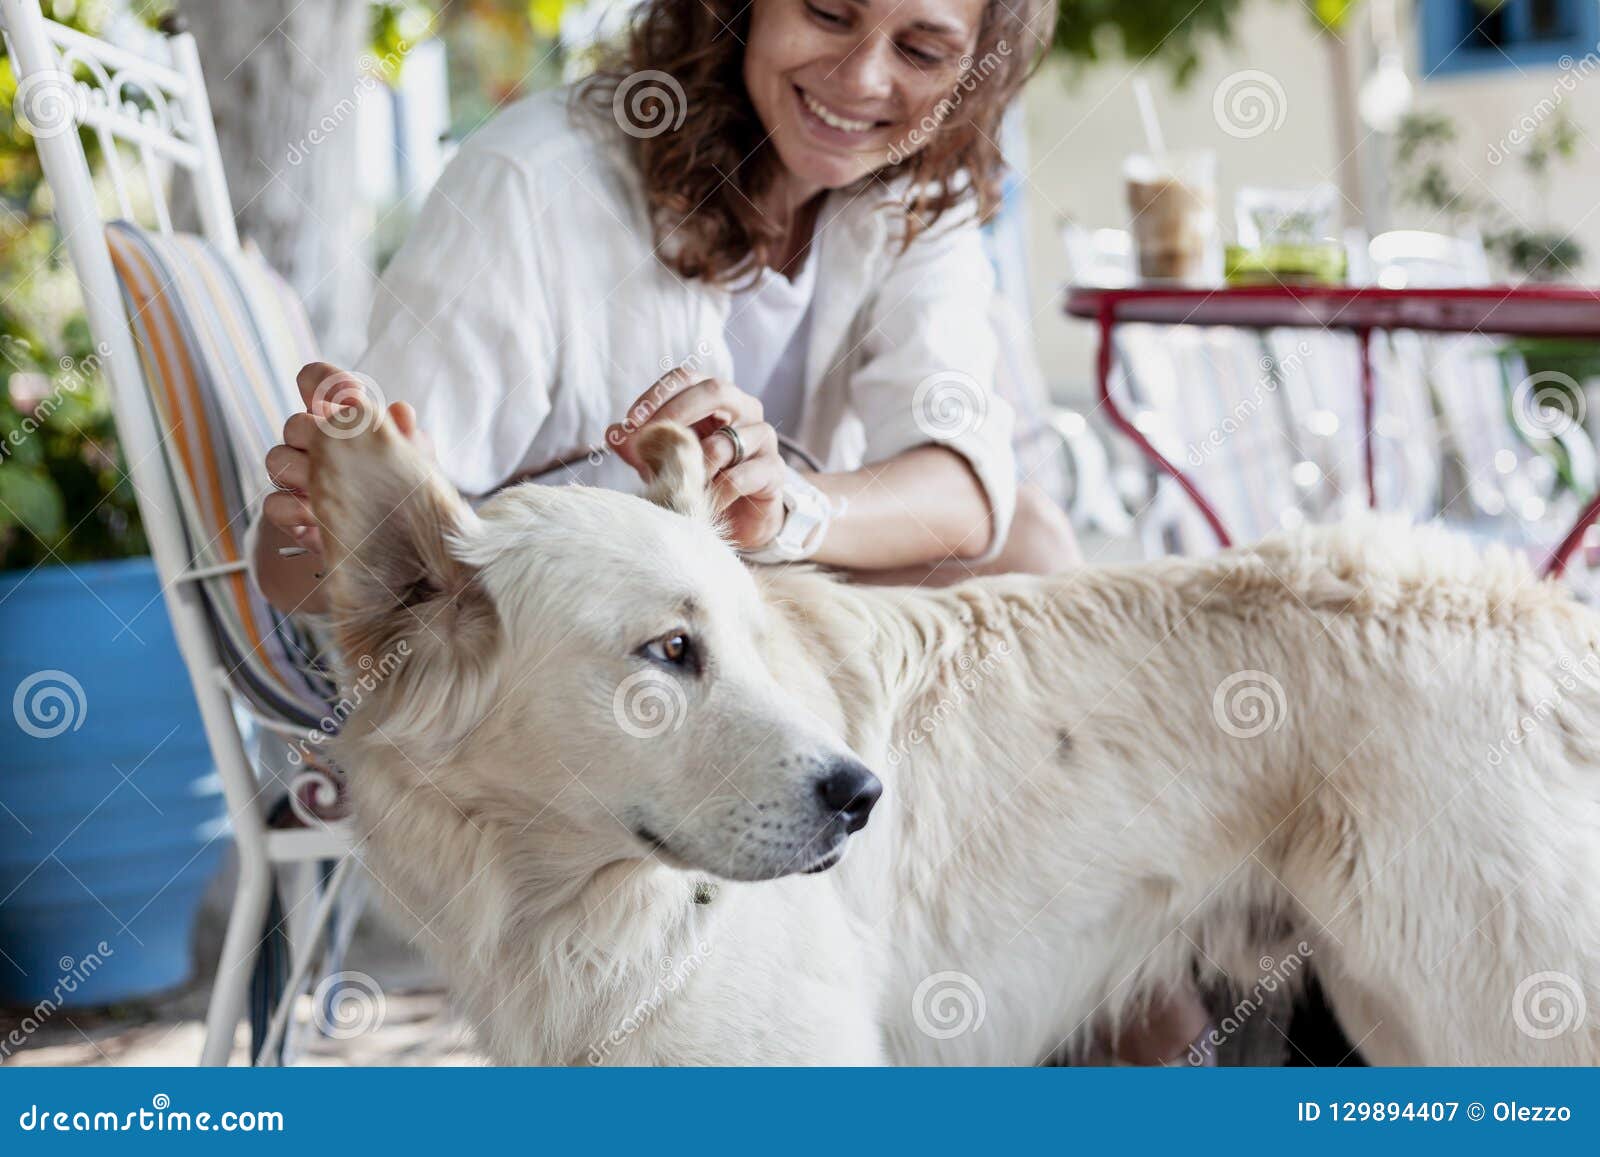 Uma jovem mulher bonita joga com seu cão, Labrador, toca olá!. Uma jovem mulher bonita joga com seu cão, Labrador, toca em suas orelhas, levanta-as acima